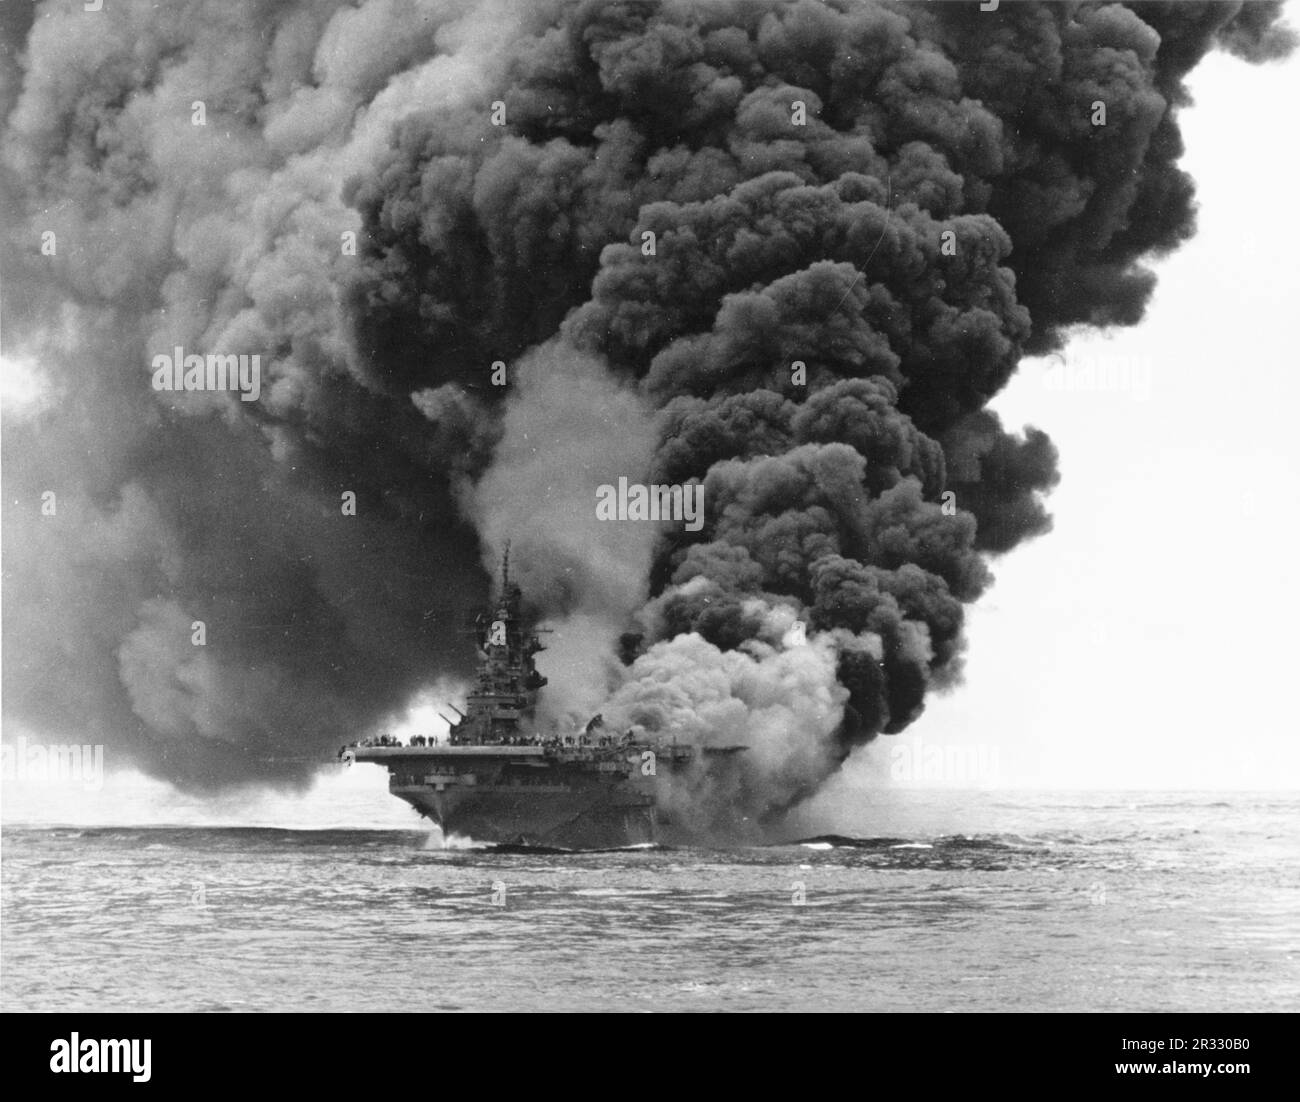 États-Unis Le porte-avions USS Bunker Hill (CV-17) de la Marine après avoir été frappé par deux avions suicide 'Kamikaze' au large d'Okinawa, le 11 mai 1945. Photographié de l'USS Bataan (CVL-29). La grève a pris des avions entièrement alimentés et armés sur le pont et a déclenché des feux très dangereux. Bien que fortement endommagé, le navire ne s'est pas effondré et est retourné aux États-Unis pour réparation. Le navire a été mis hors service en 1966 et mis au rebut en 1973. Banque D'Images